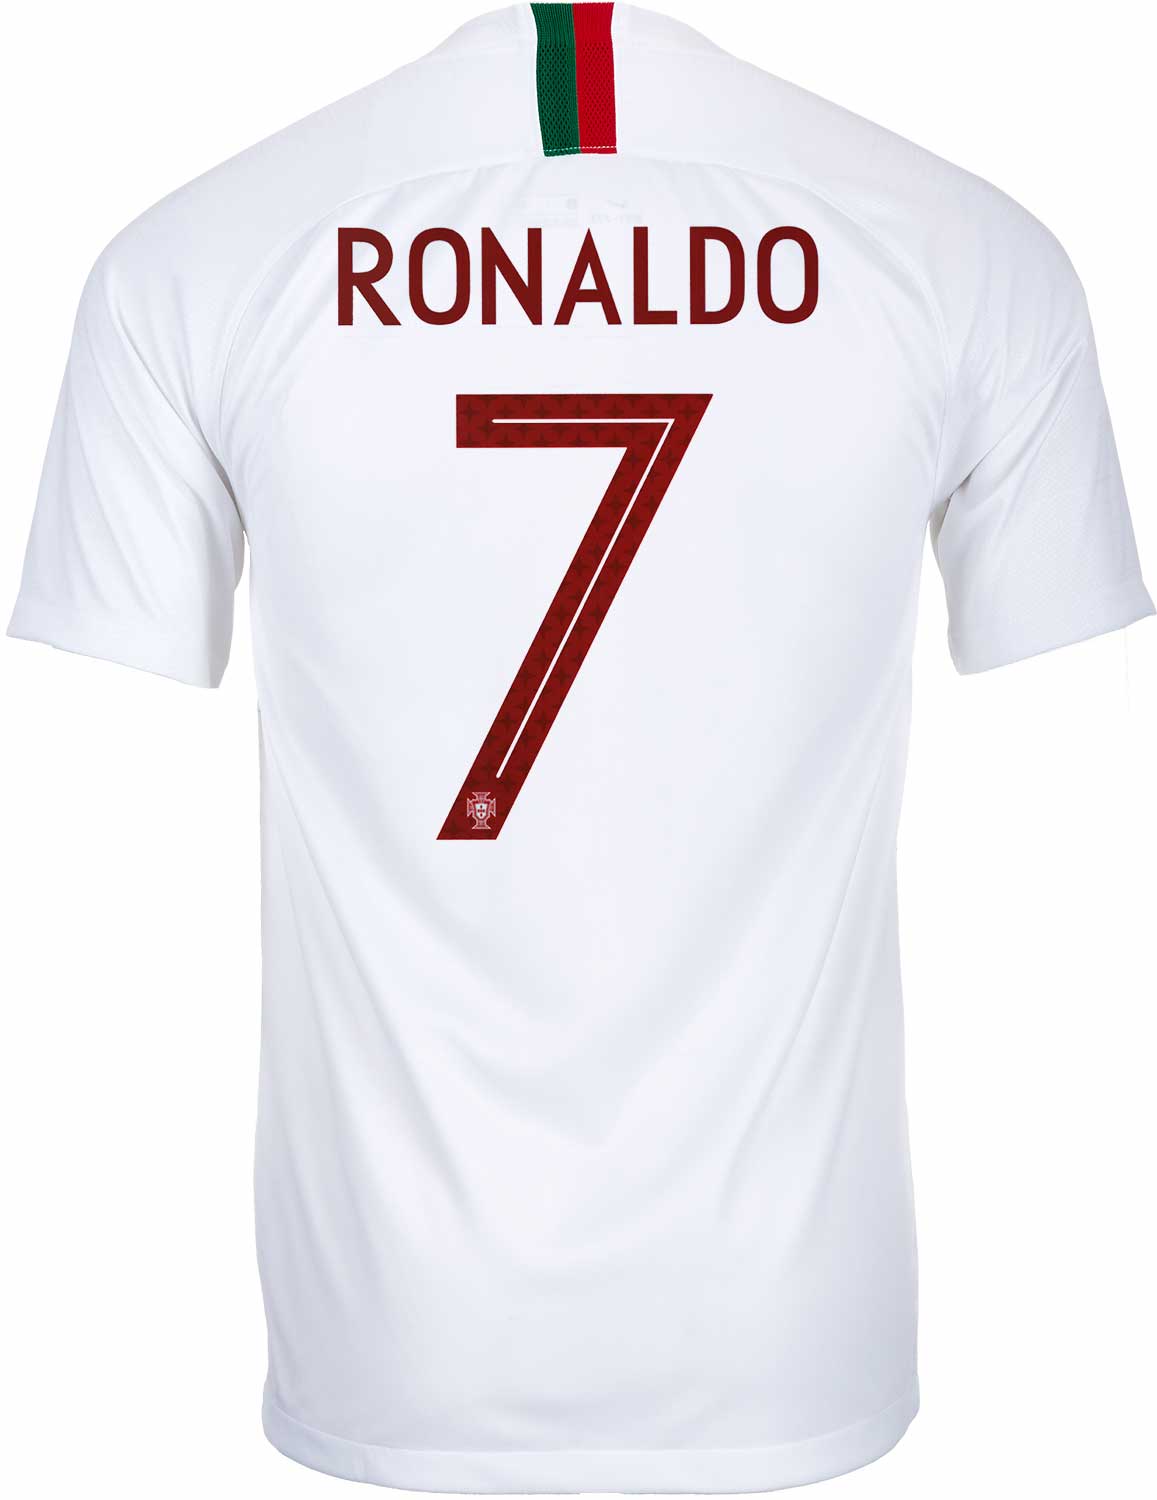 cristiano ronaldo portugal jersey 2018